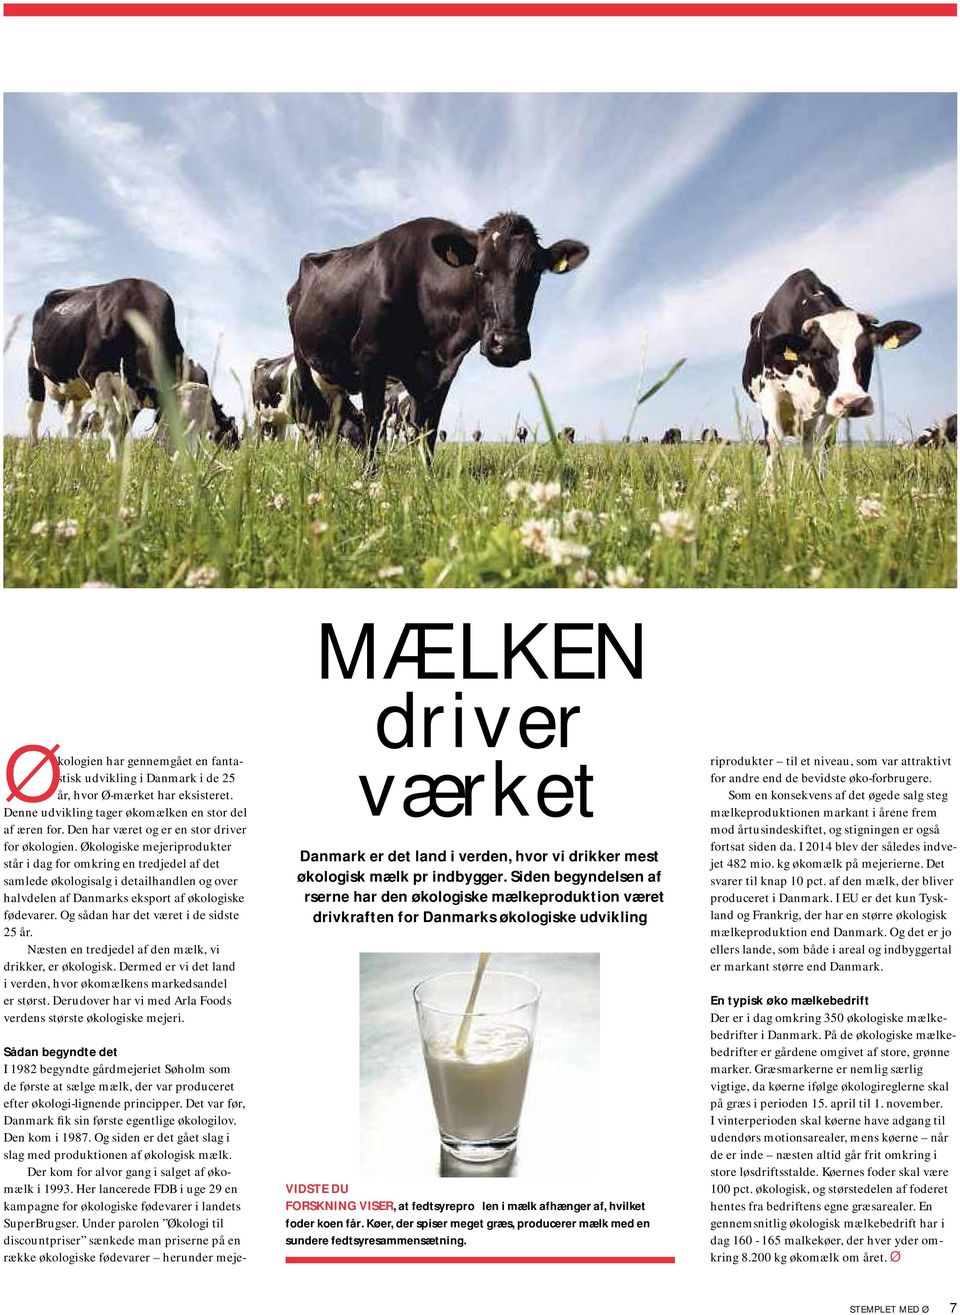 Økologiske mejeriprodukter står i dag for omkring en tredjedel af det samlede økologisalg i detailhandlen og over halvdelen af Danmarks eksport af økologiske fødevarer.